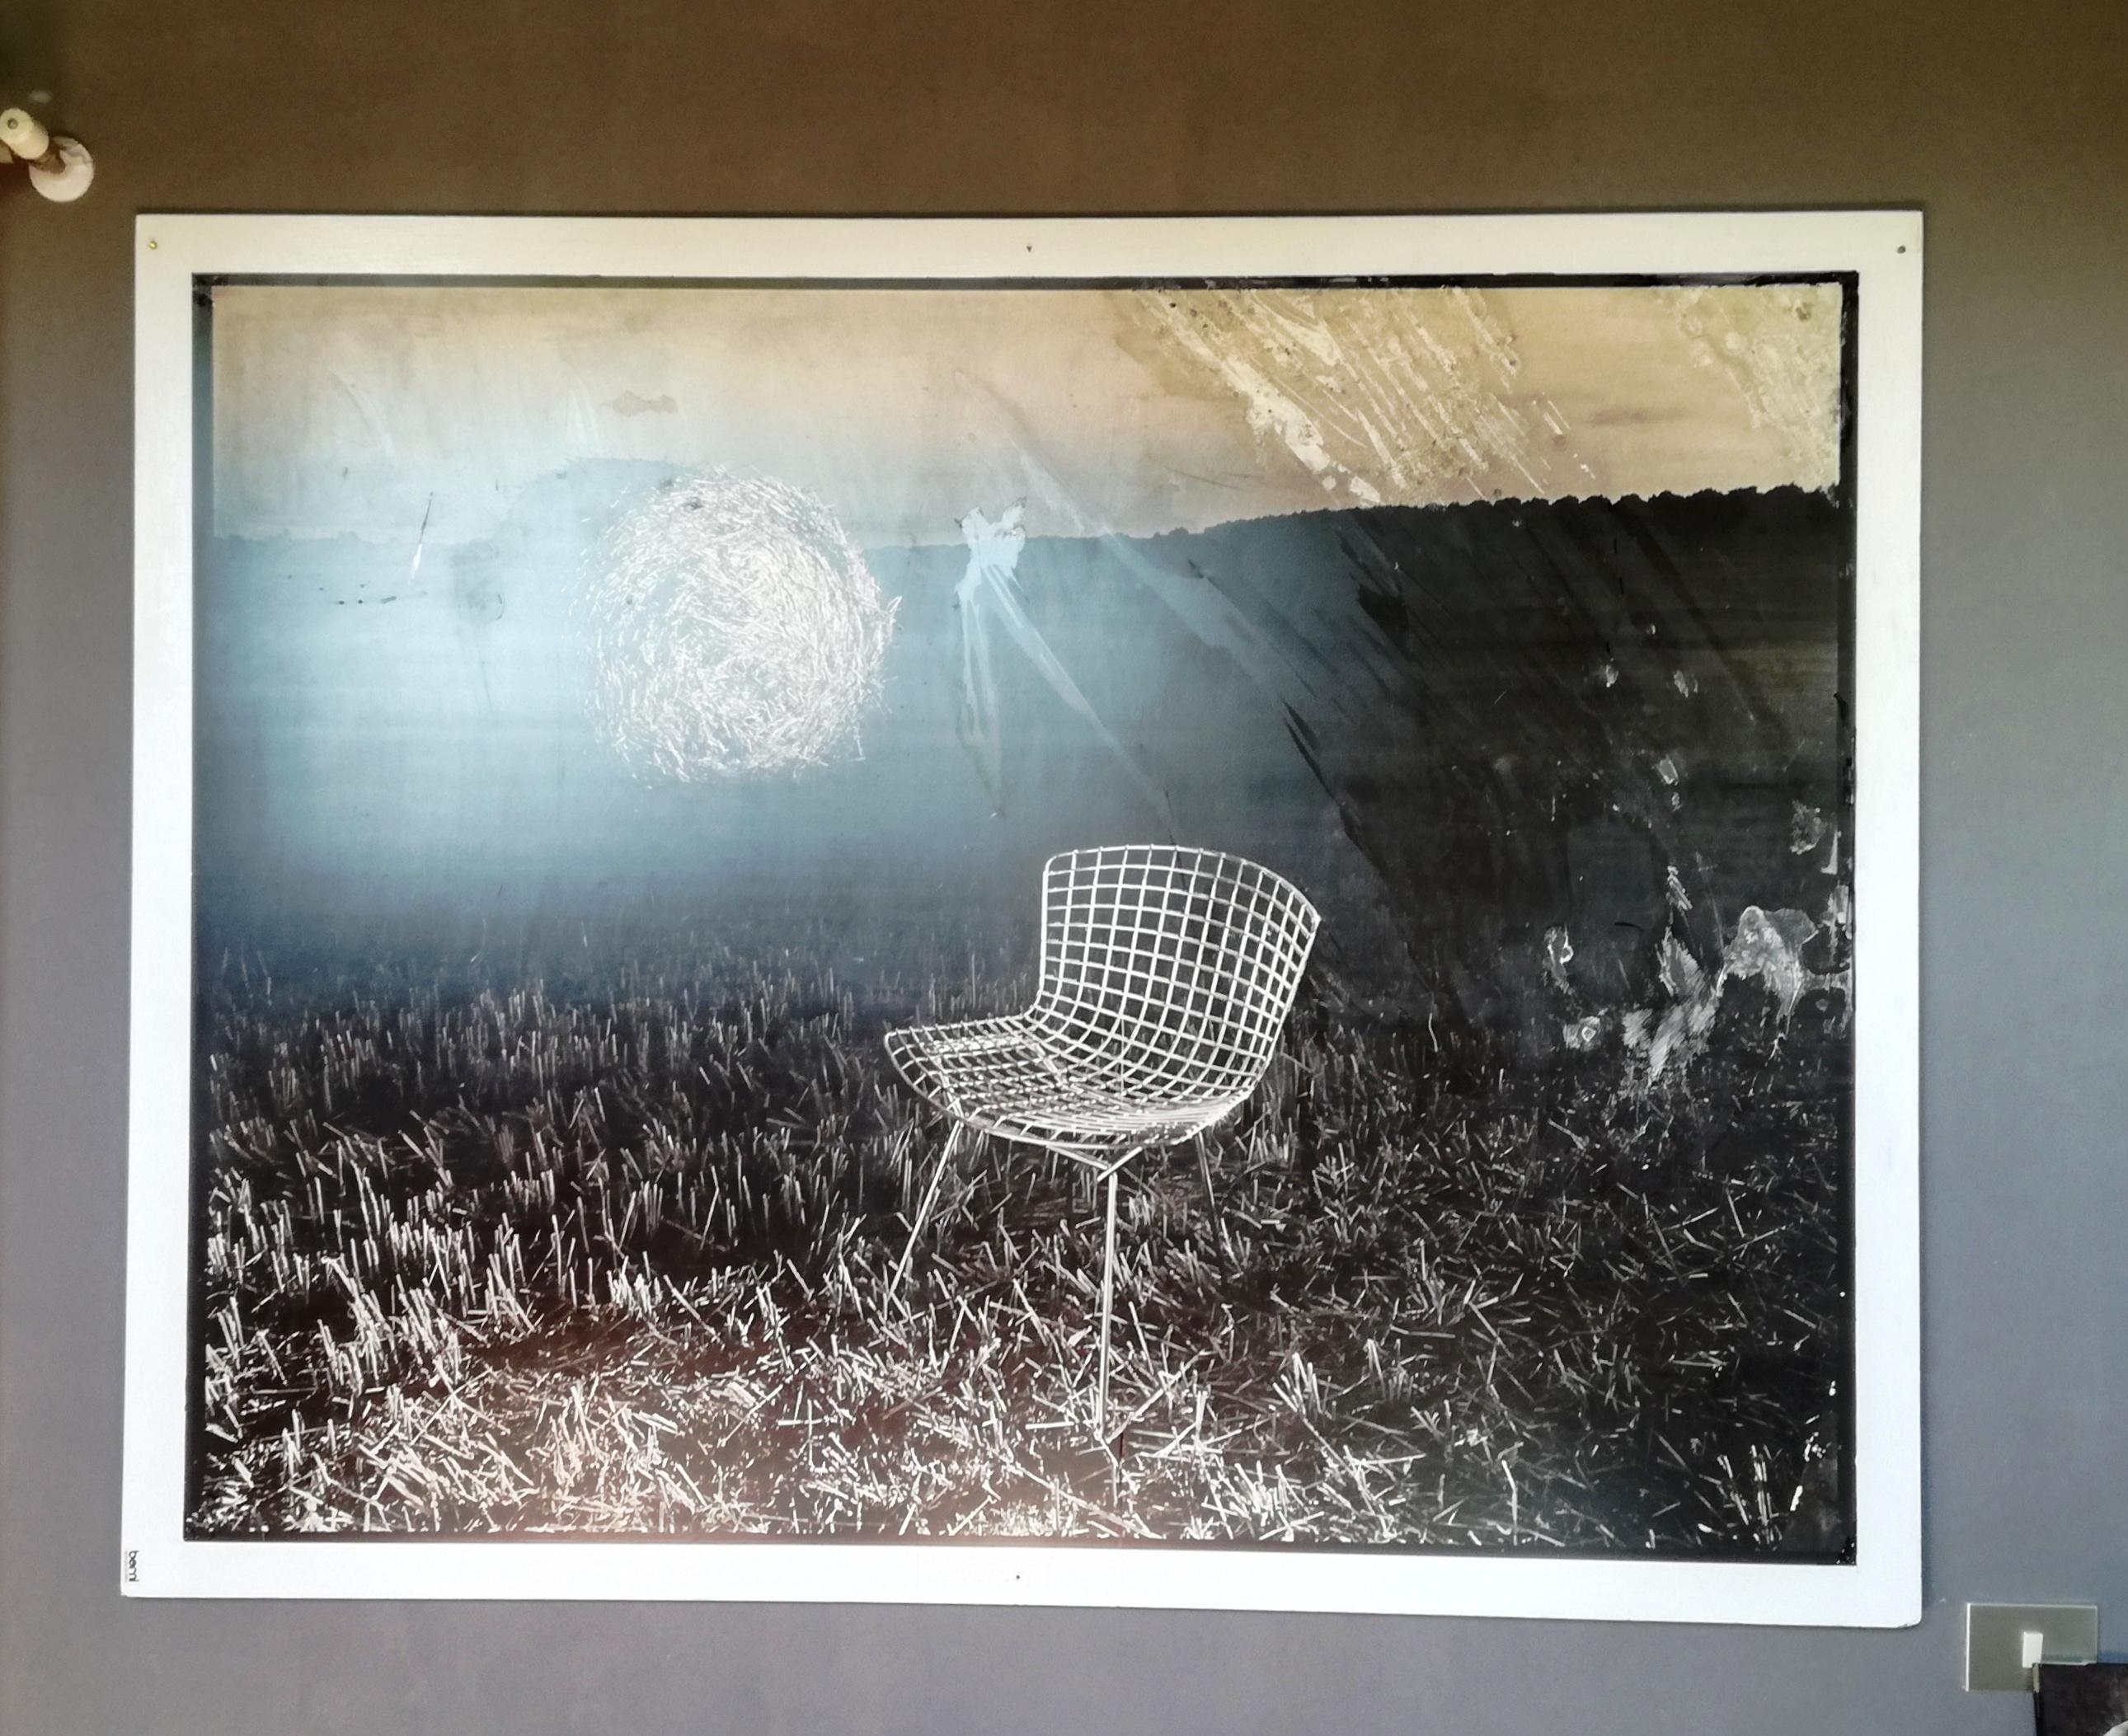 Großdruck mit Fotos von Luigi Bussolati, 1990er Jahre. Thema Drahtstuhl von Bertoia. Gedruckt auf 4 mm Forex. Es ist Teil einer Gruppe von 8 Designfotografien. Die Oberfläche ist auf der rechten Seite mit Zeitangaben versehen.